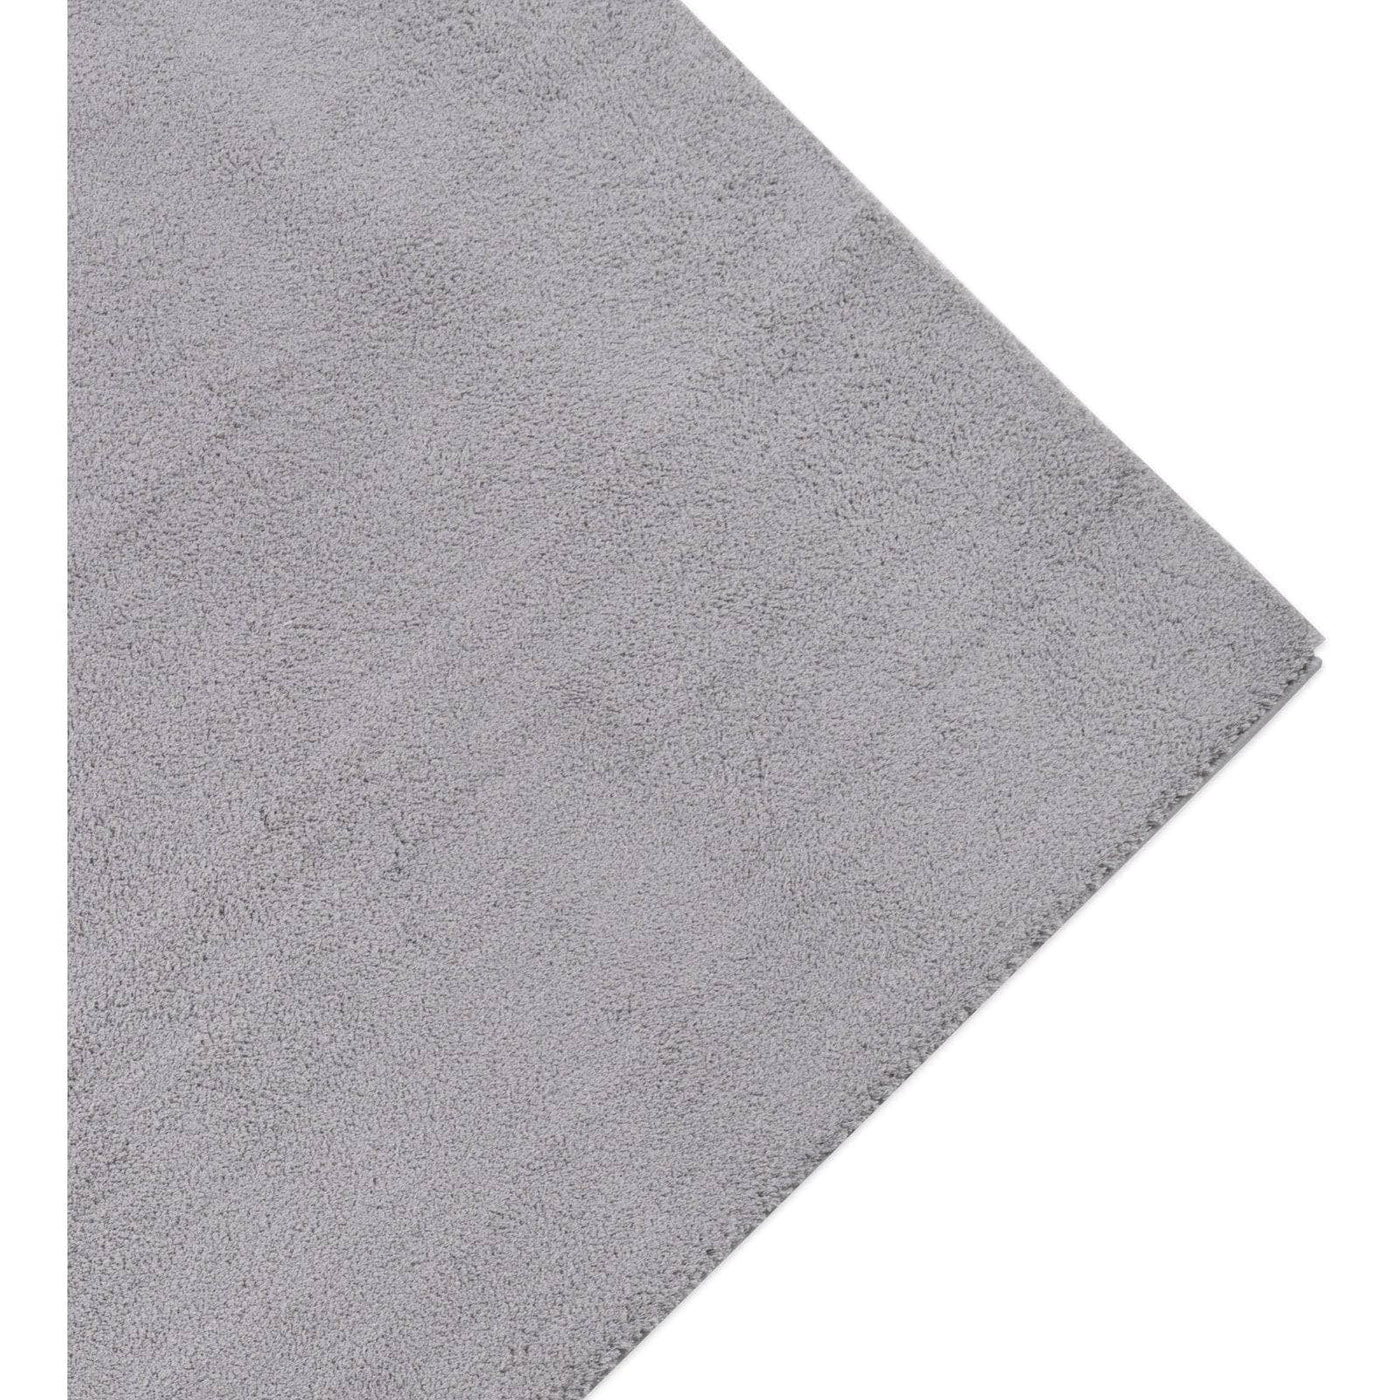 Velma Plain Shaggy Area Rug, Grey, 120x180 cm - 4